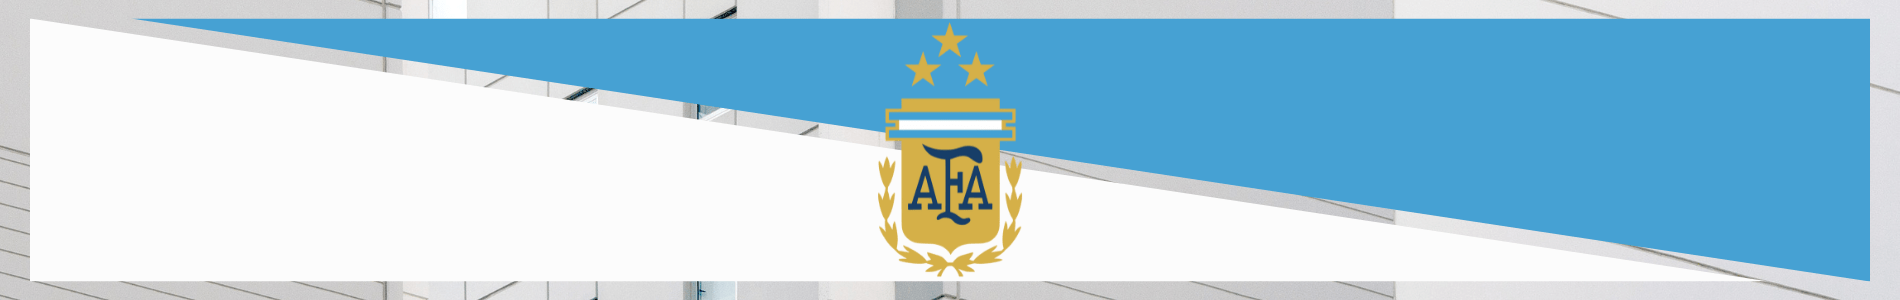 maillot de foot argentine